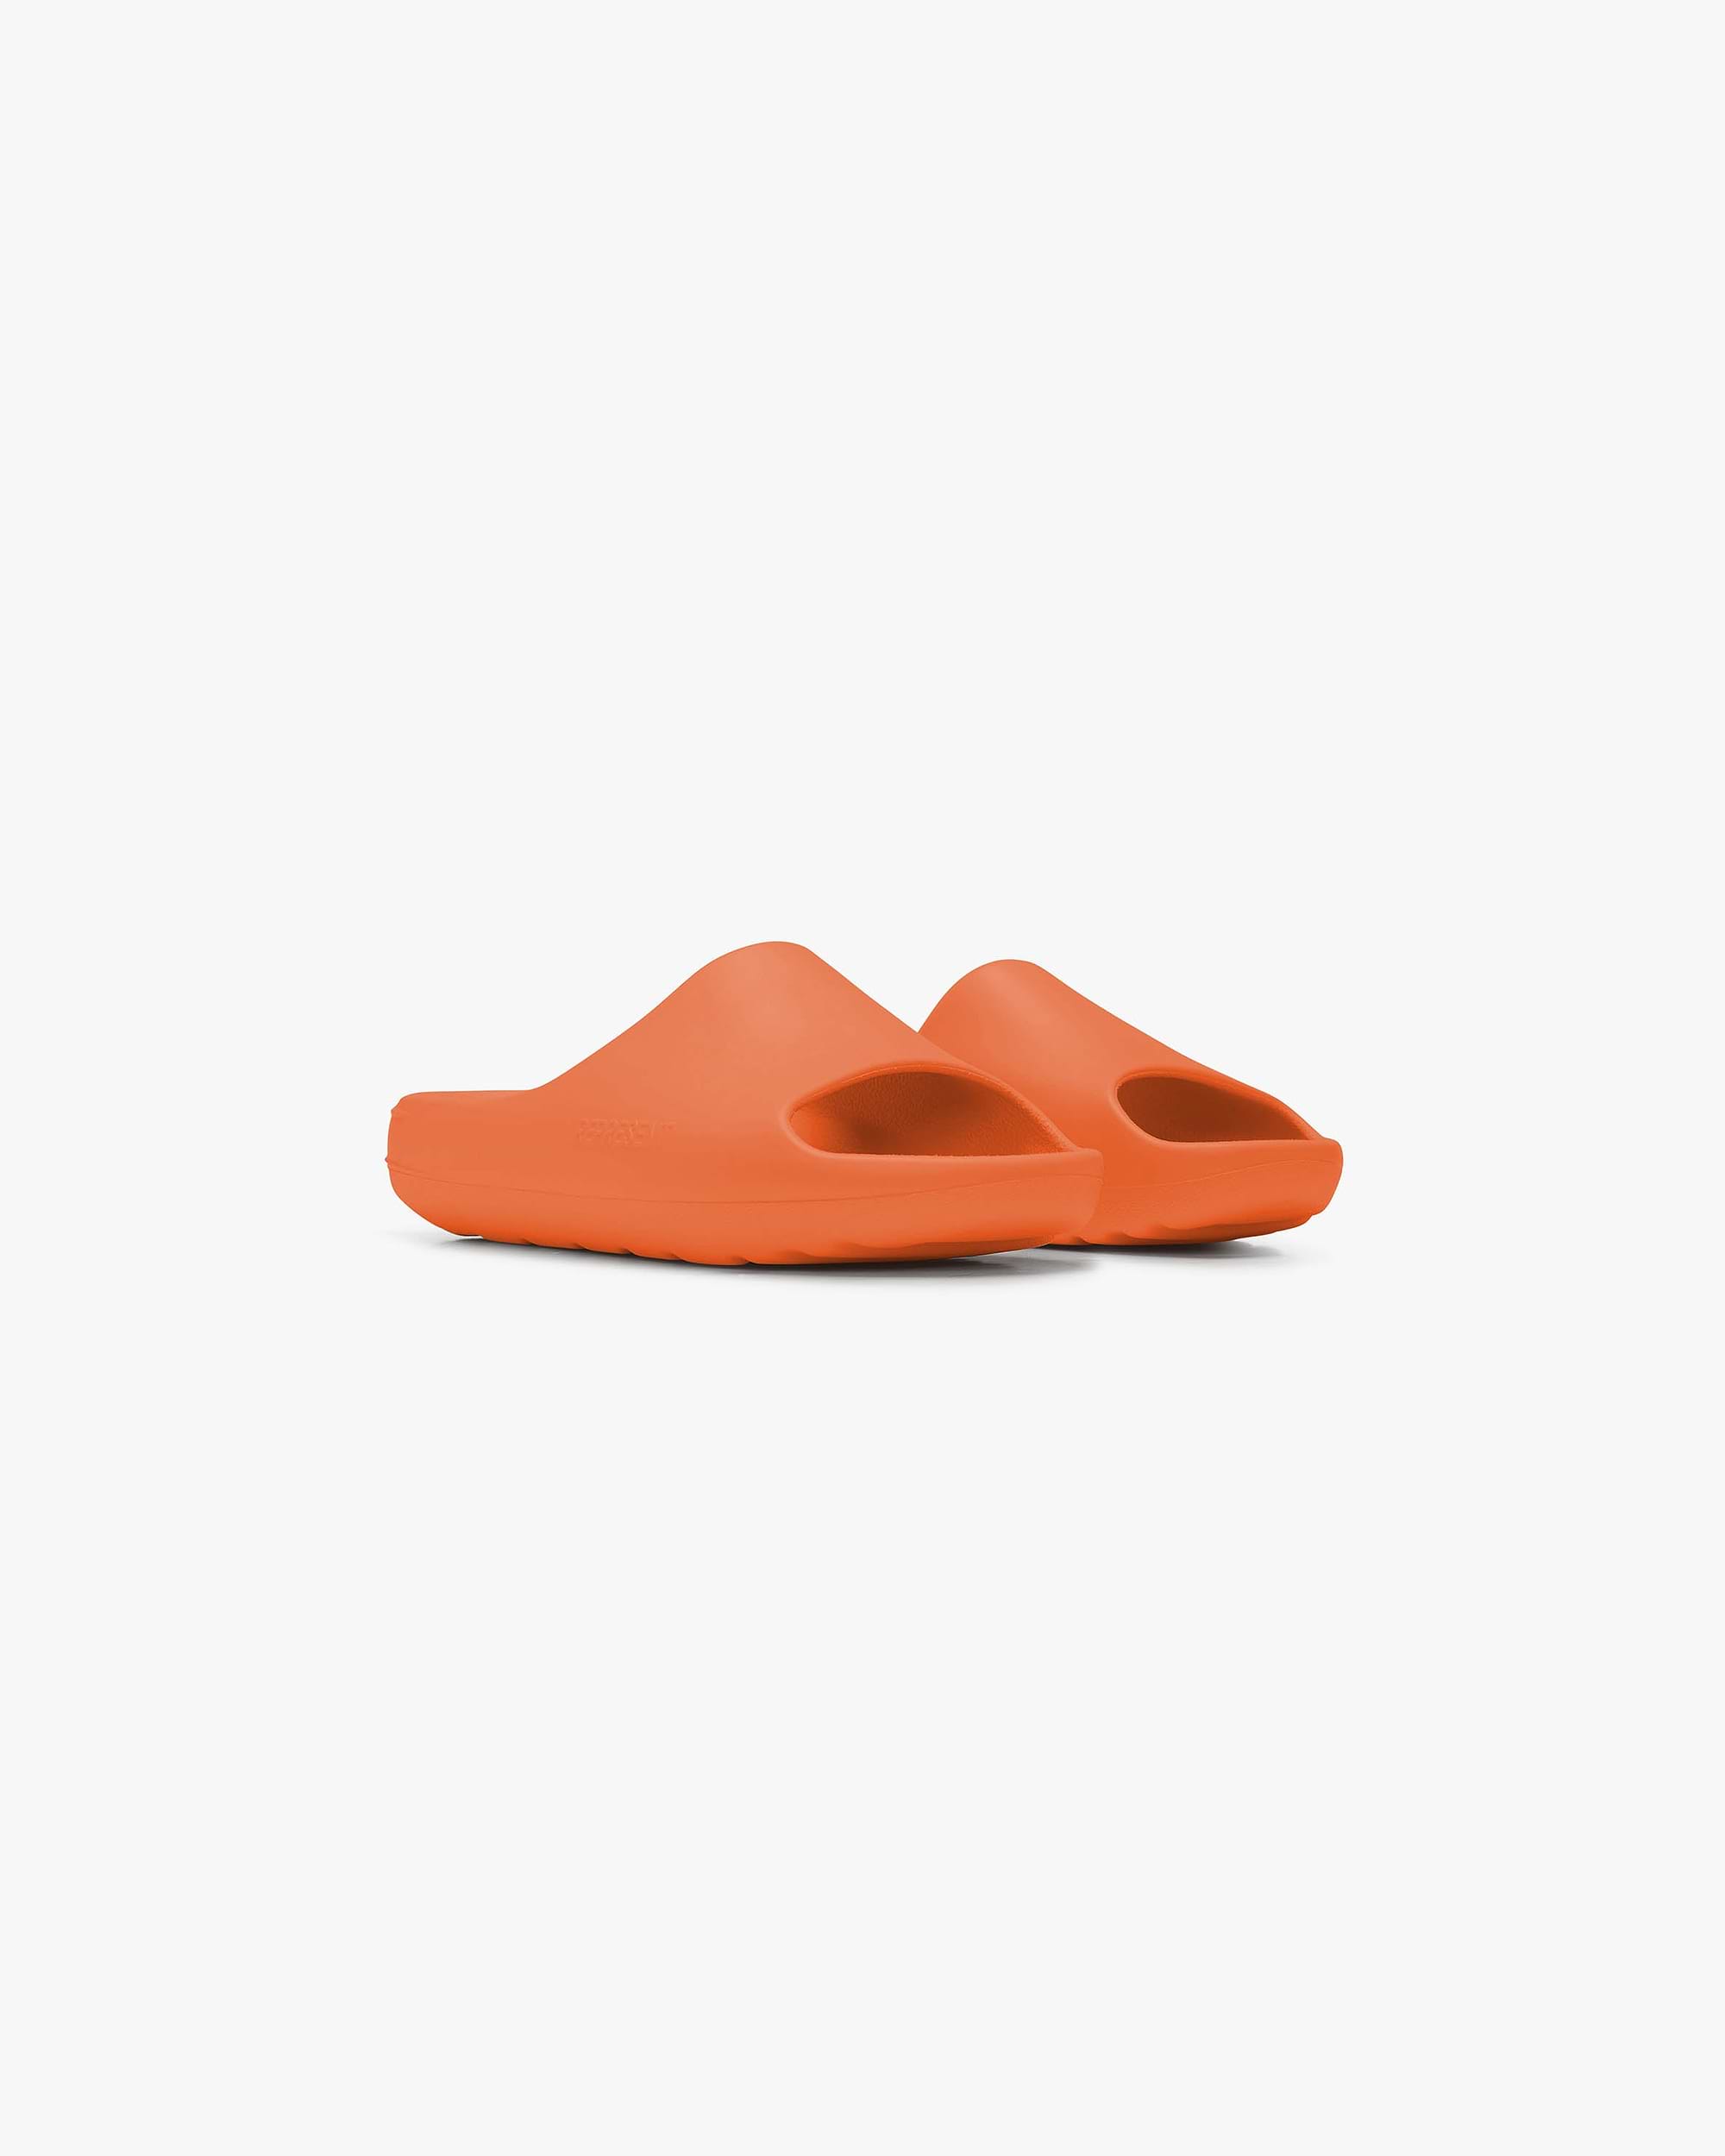 Sliders | Neon Orange Footwear Summer Vault 23 | Represent Clo